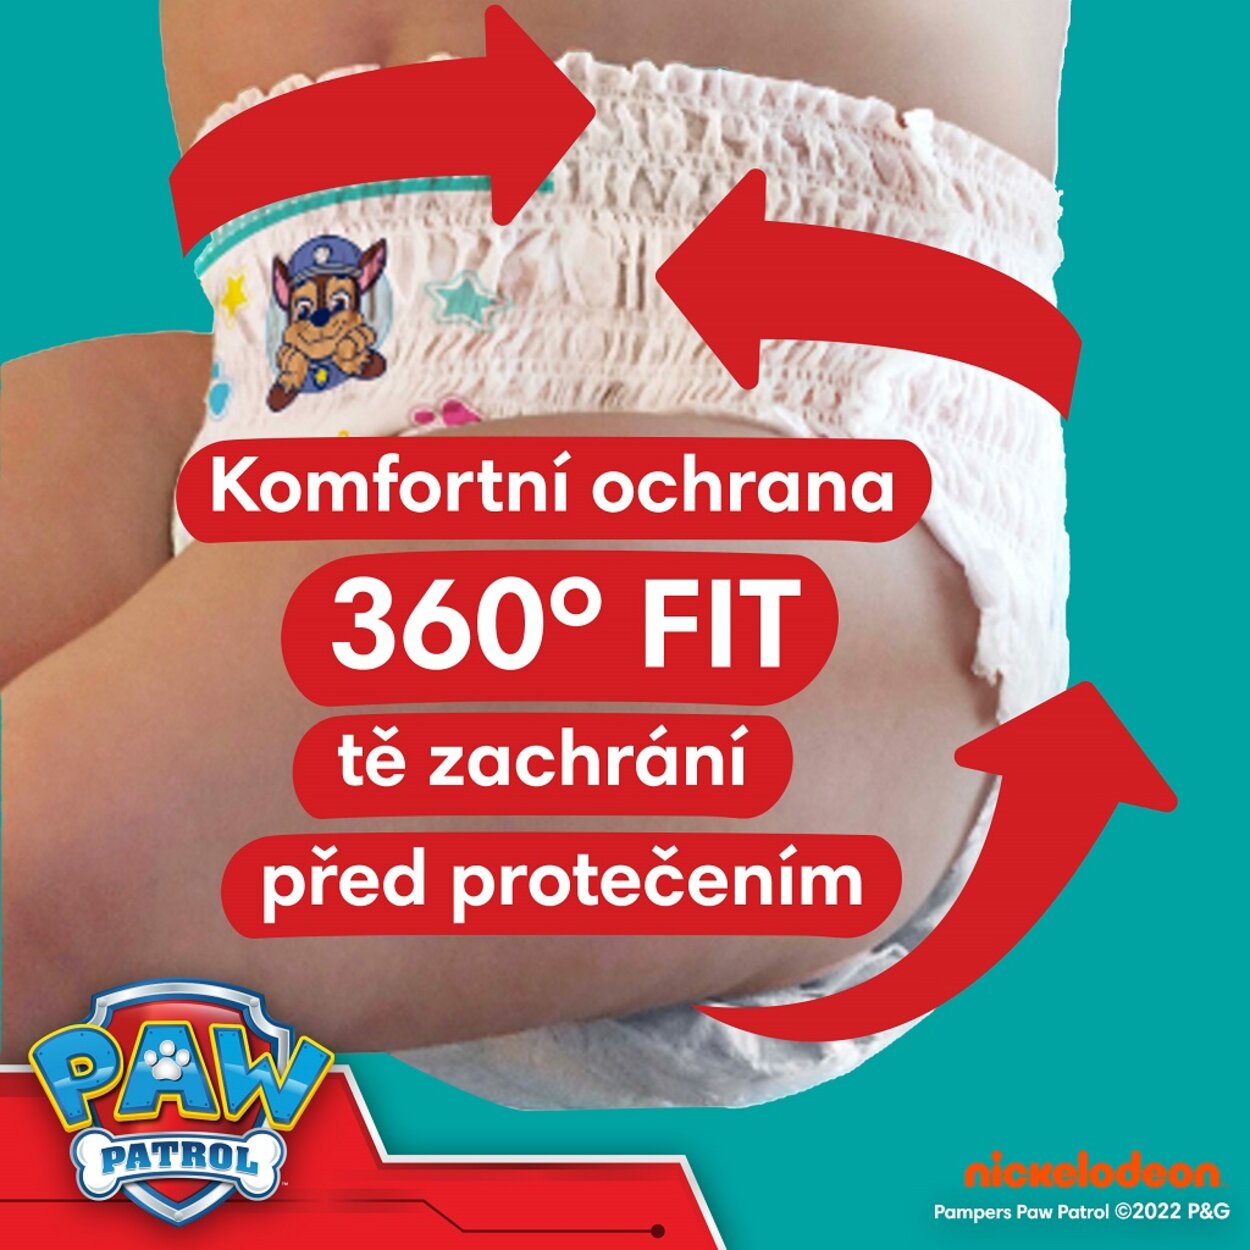 PAMPERS Plienky nohavičkové Active Baby Pants Paw Patrol veľ. 6 (14-19 kg)  120 ks | Predeti.sk